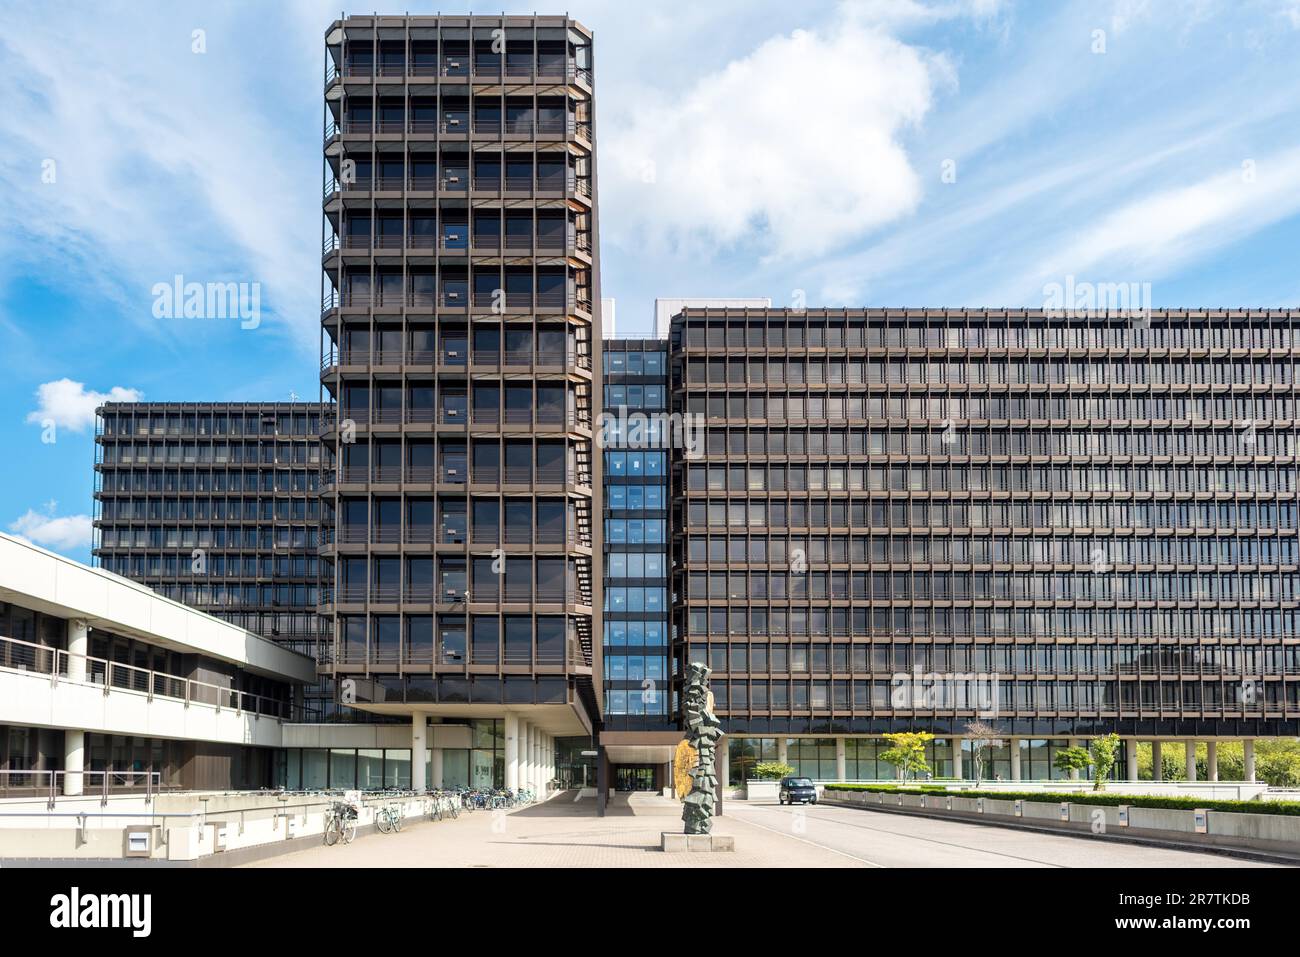 Edificio di uffici nello stile dell'architettura degli anni Settanta nella City Nord, una città di uffici progettata negli anni Sessanta nel nord di Amburgo Foto Stock